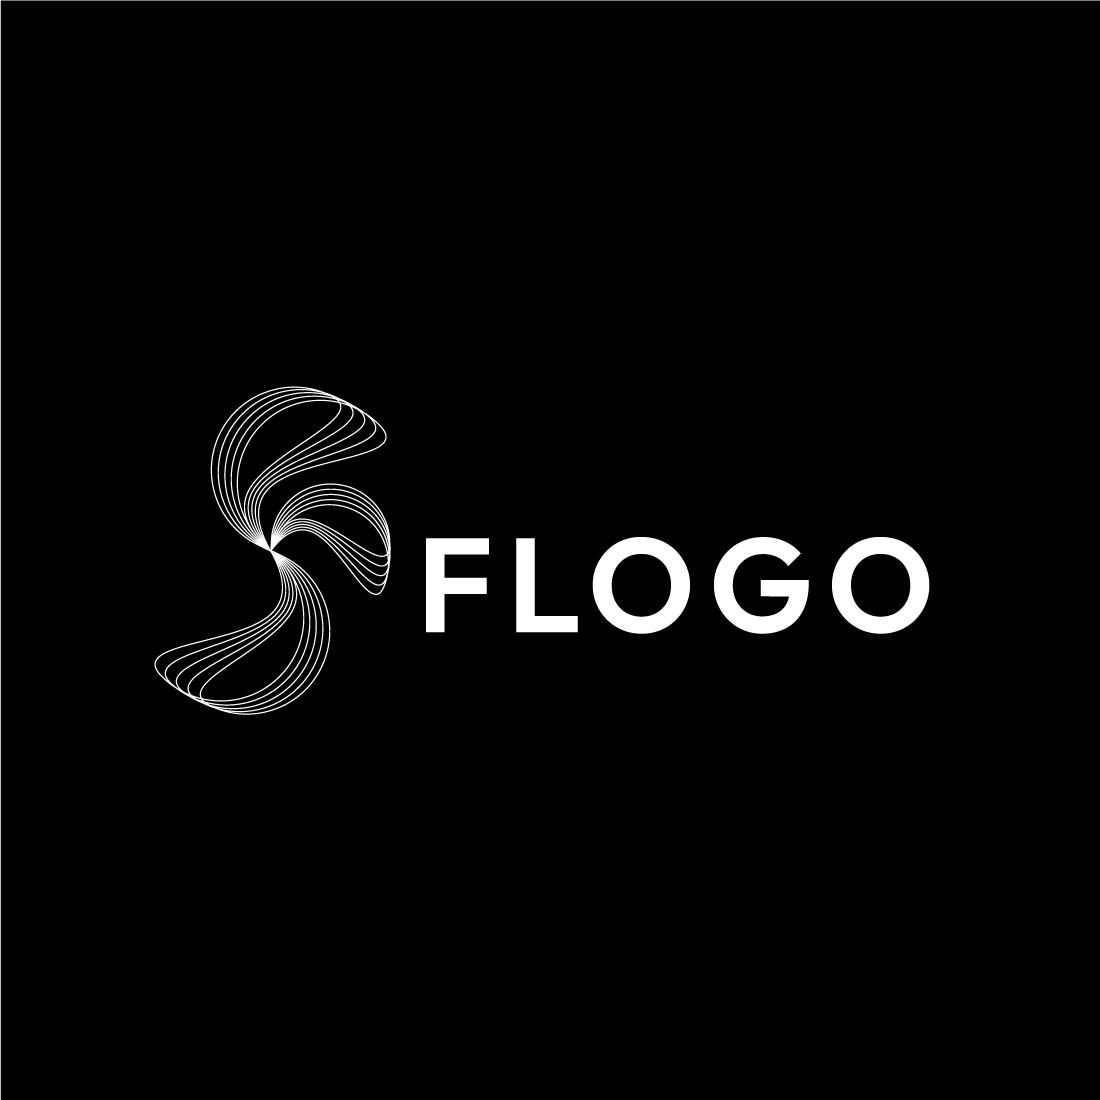 Elegant Line Art Letter F Initial Logo Design Bundle preview image.